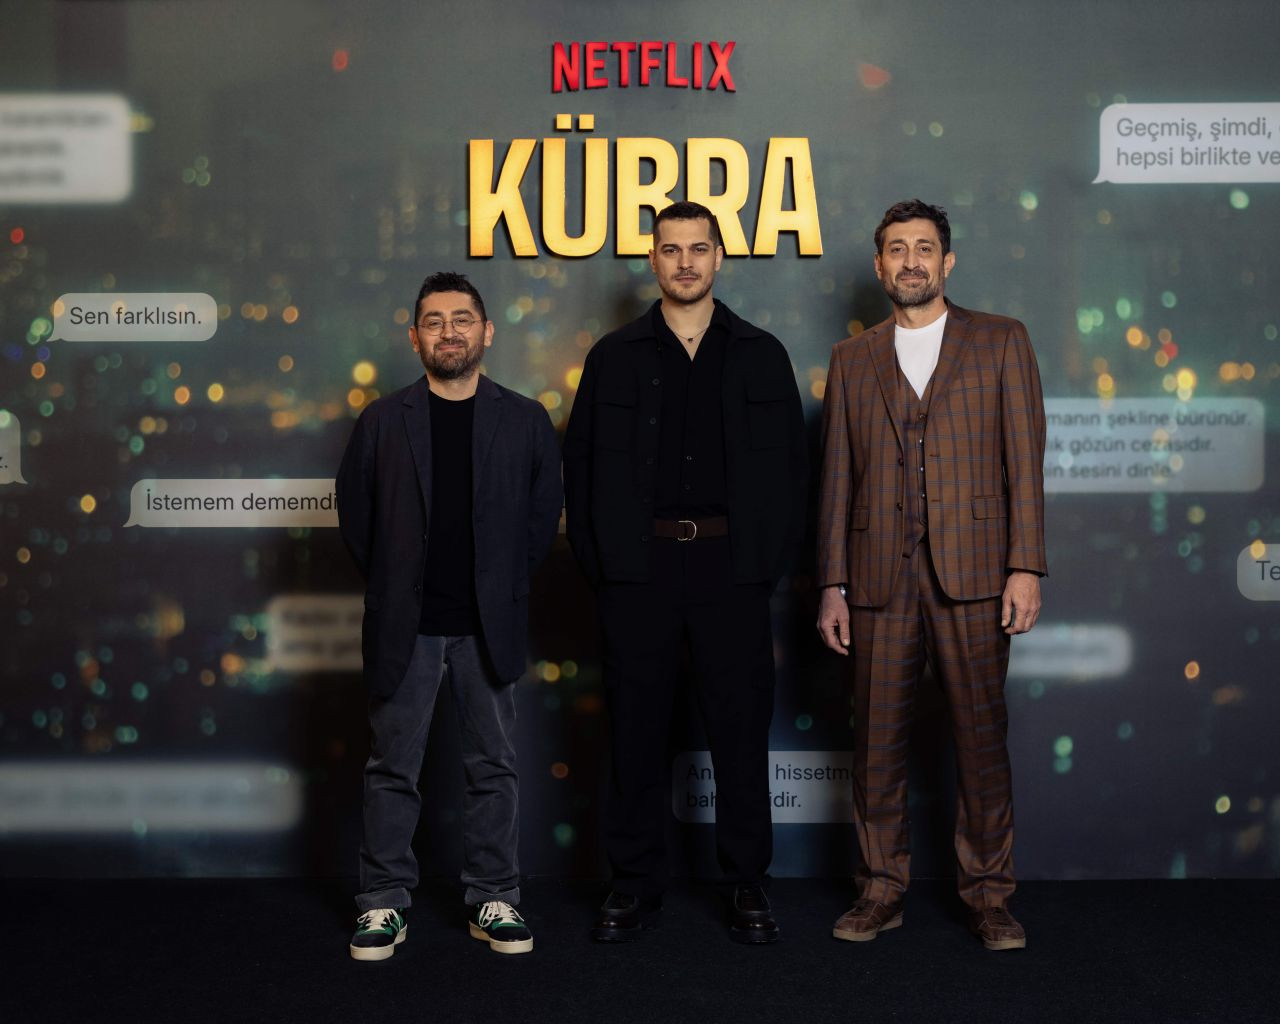 Çağatay Ulusoy’un yeni Netflix dizisi Kübra’nın galası gerçekleşti - Sayfa 2